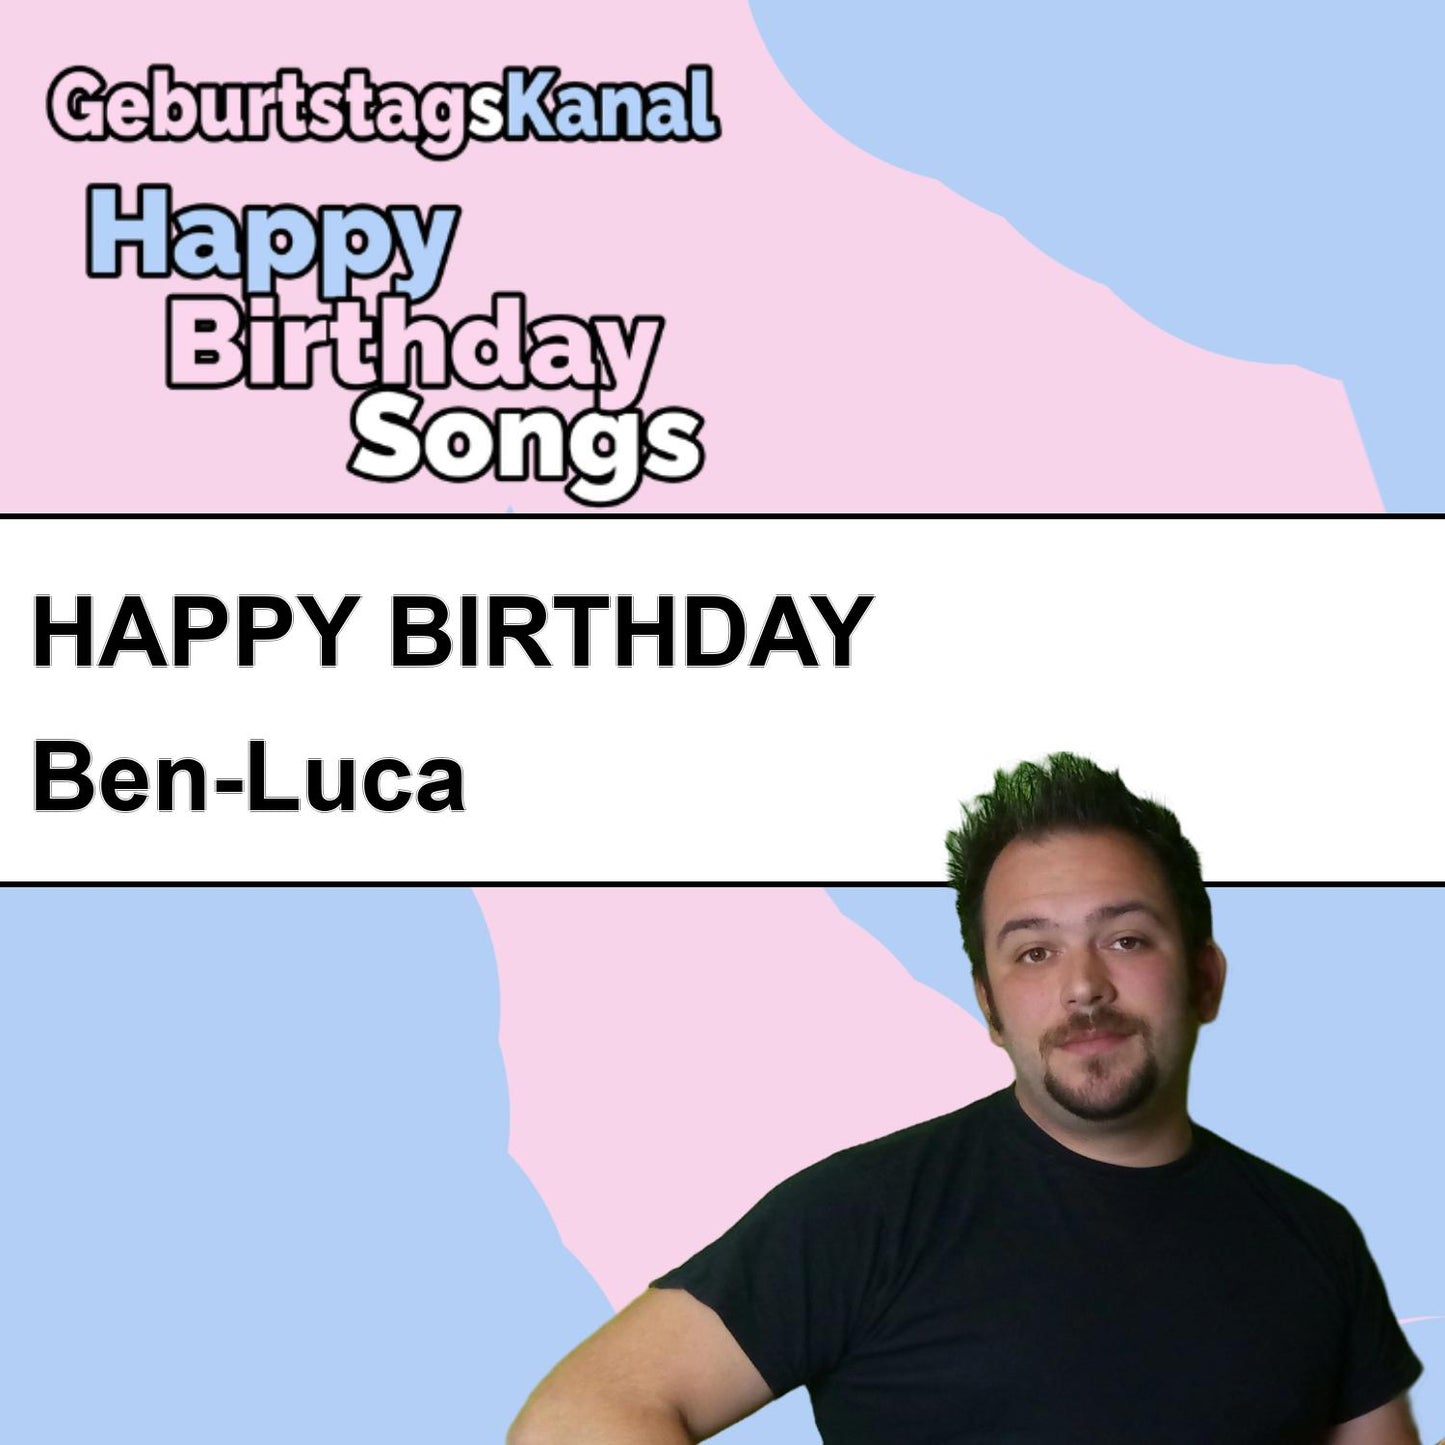 Produktbild Happy Birthday to you Ben-Luca mit Wunschgrußbotschaft